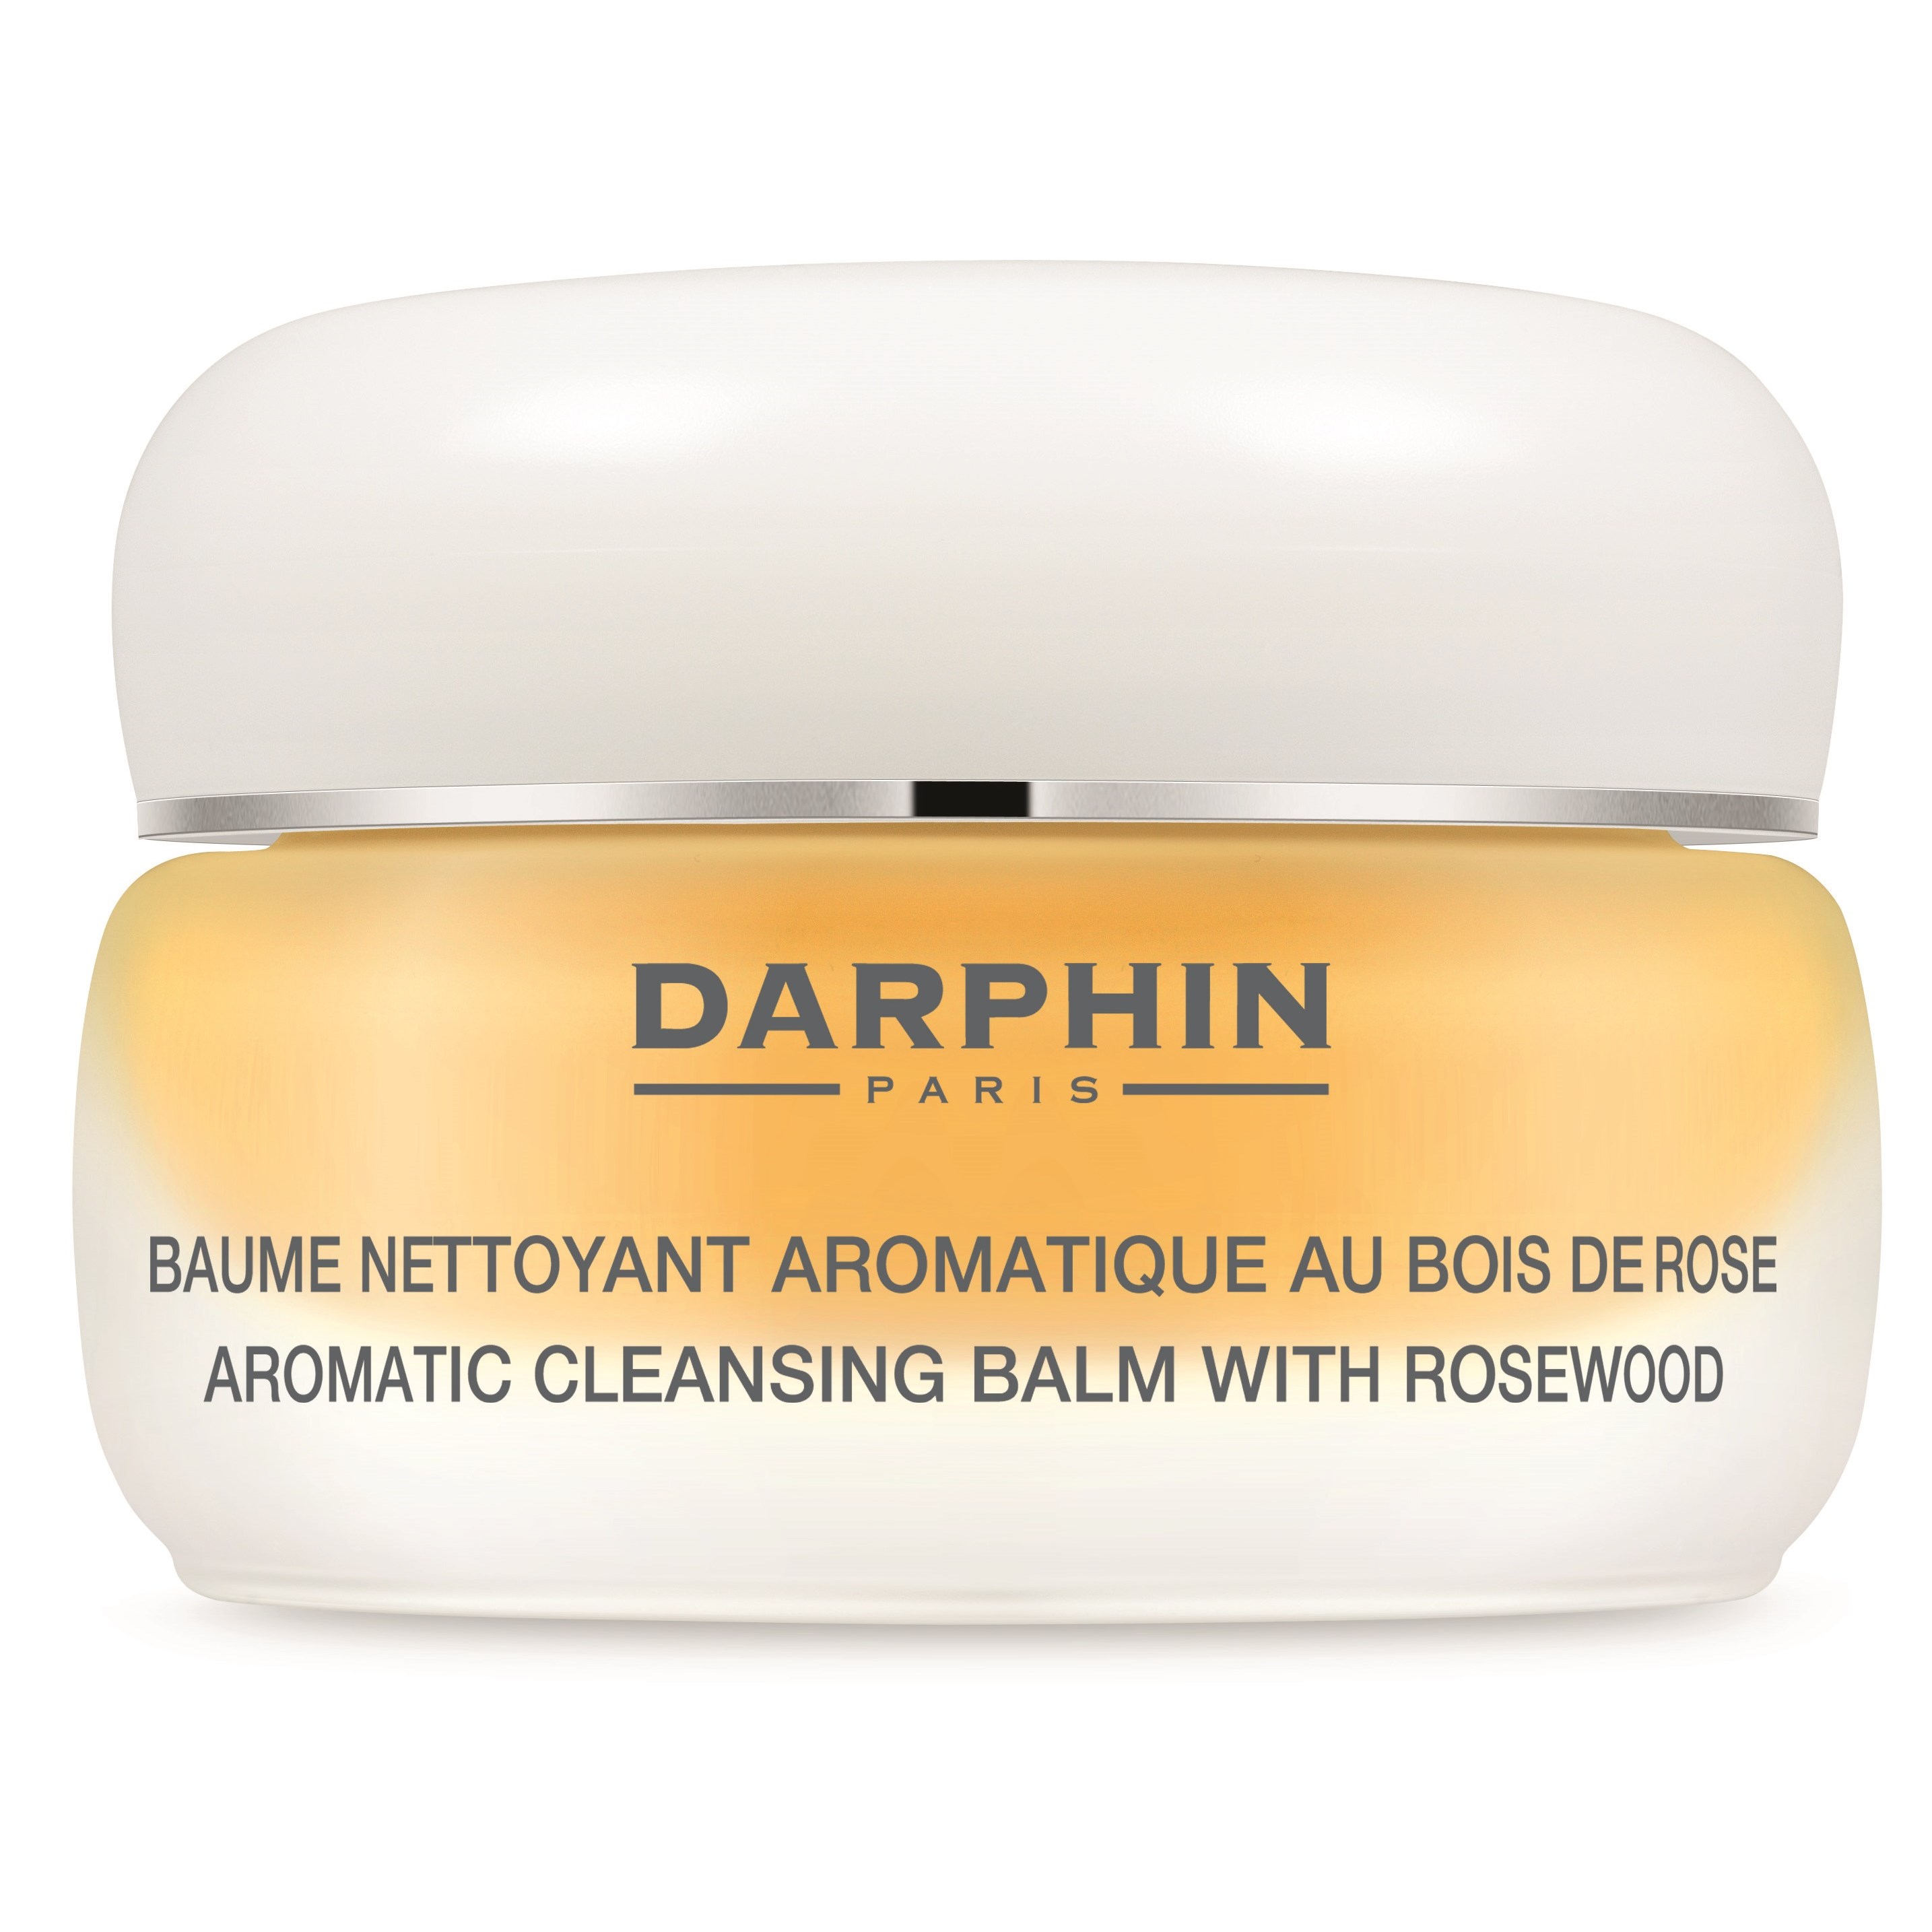 Zdjęcia - Produkt do mycia twarzy i ciała Darphin Aromatic Cleansing Balm With Rosewood 40 ml 